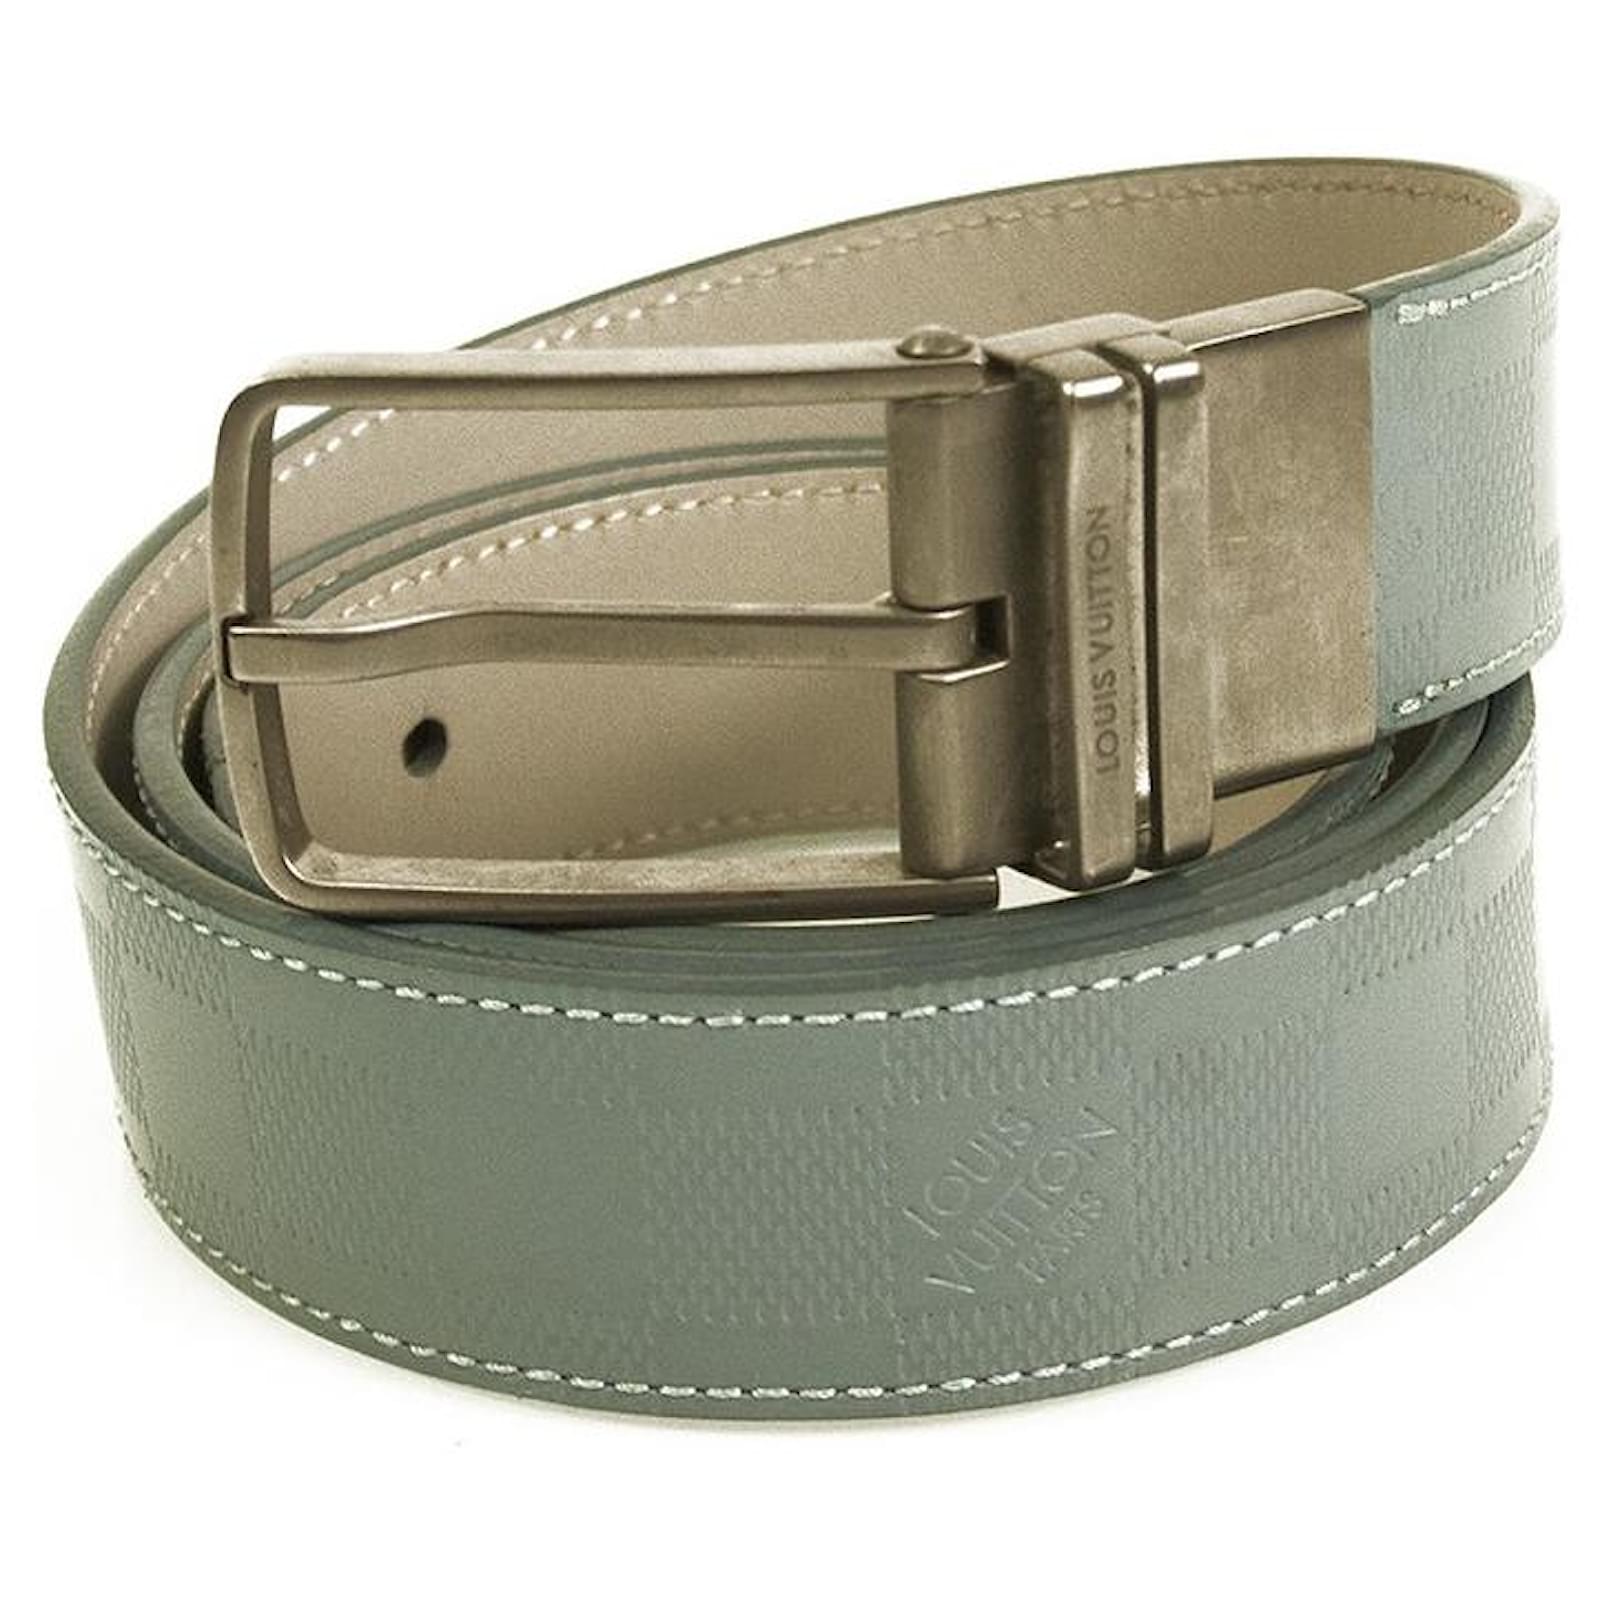 Louis Vuitton DAMIER BLK belt size 40